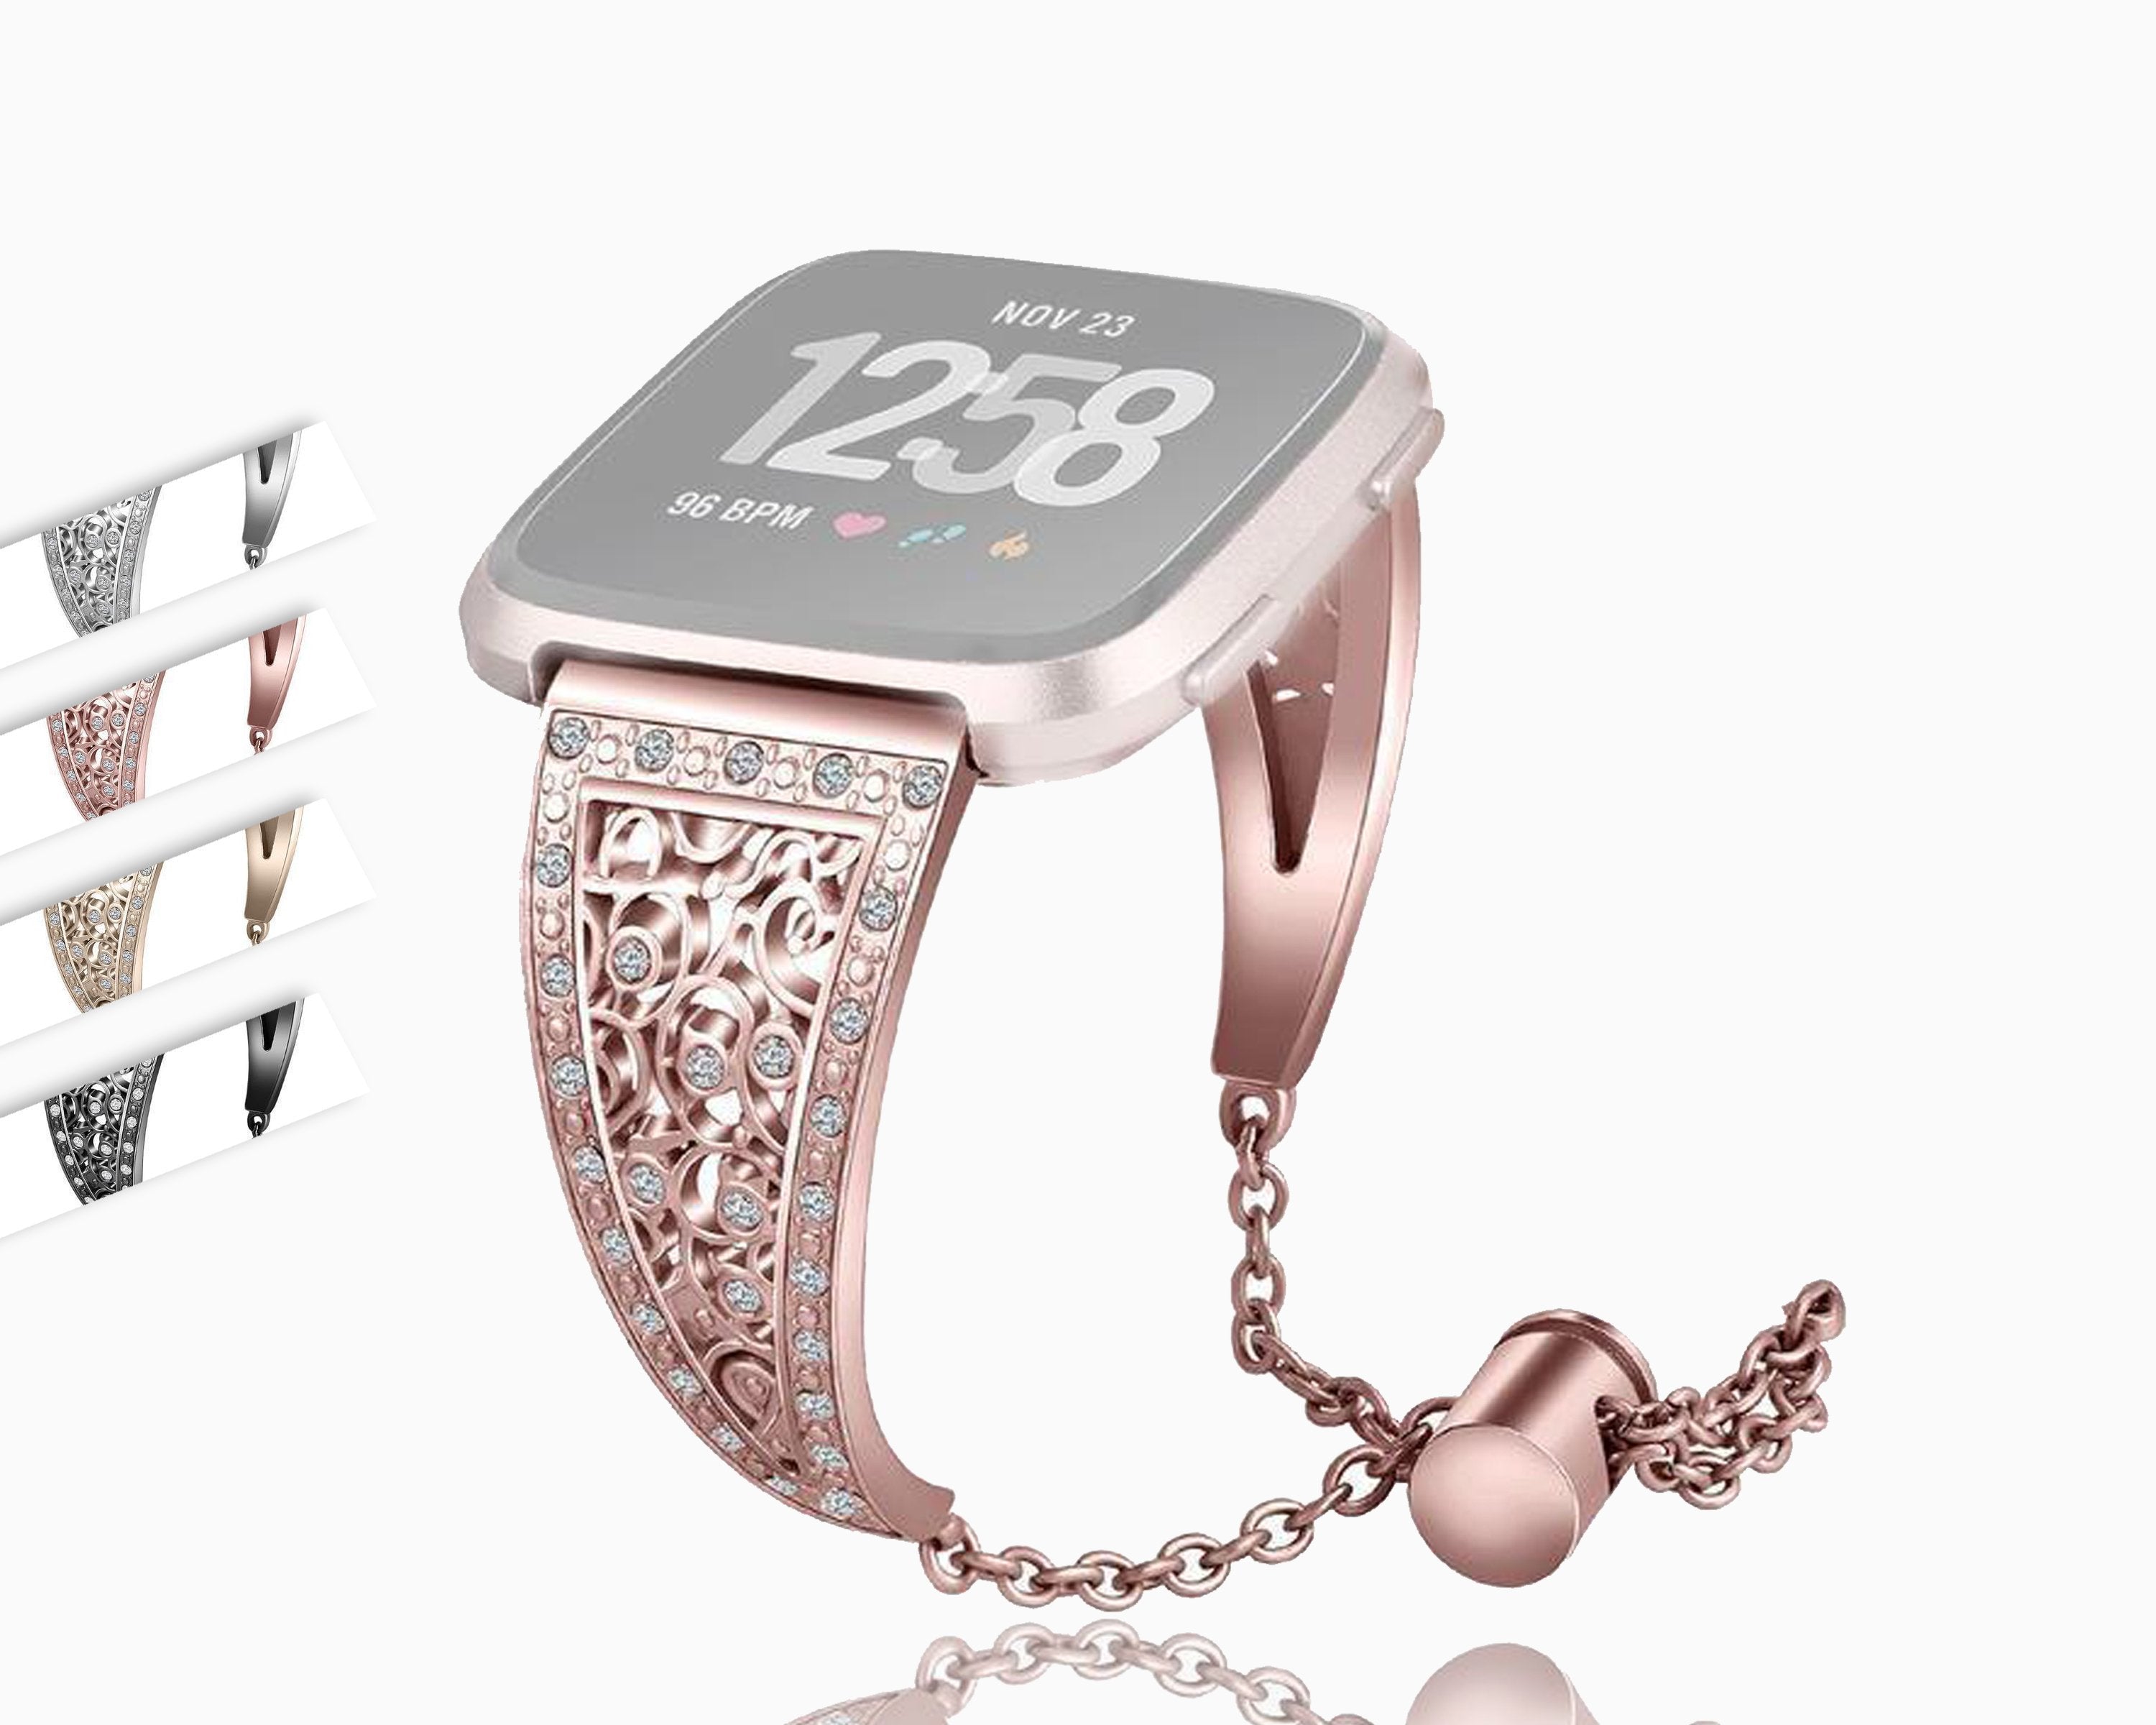 PrettyStraps Women's Luxury Apple Watch Strap